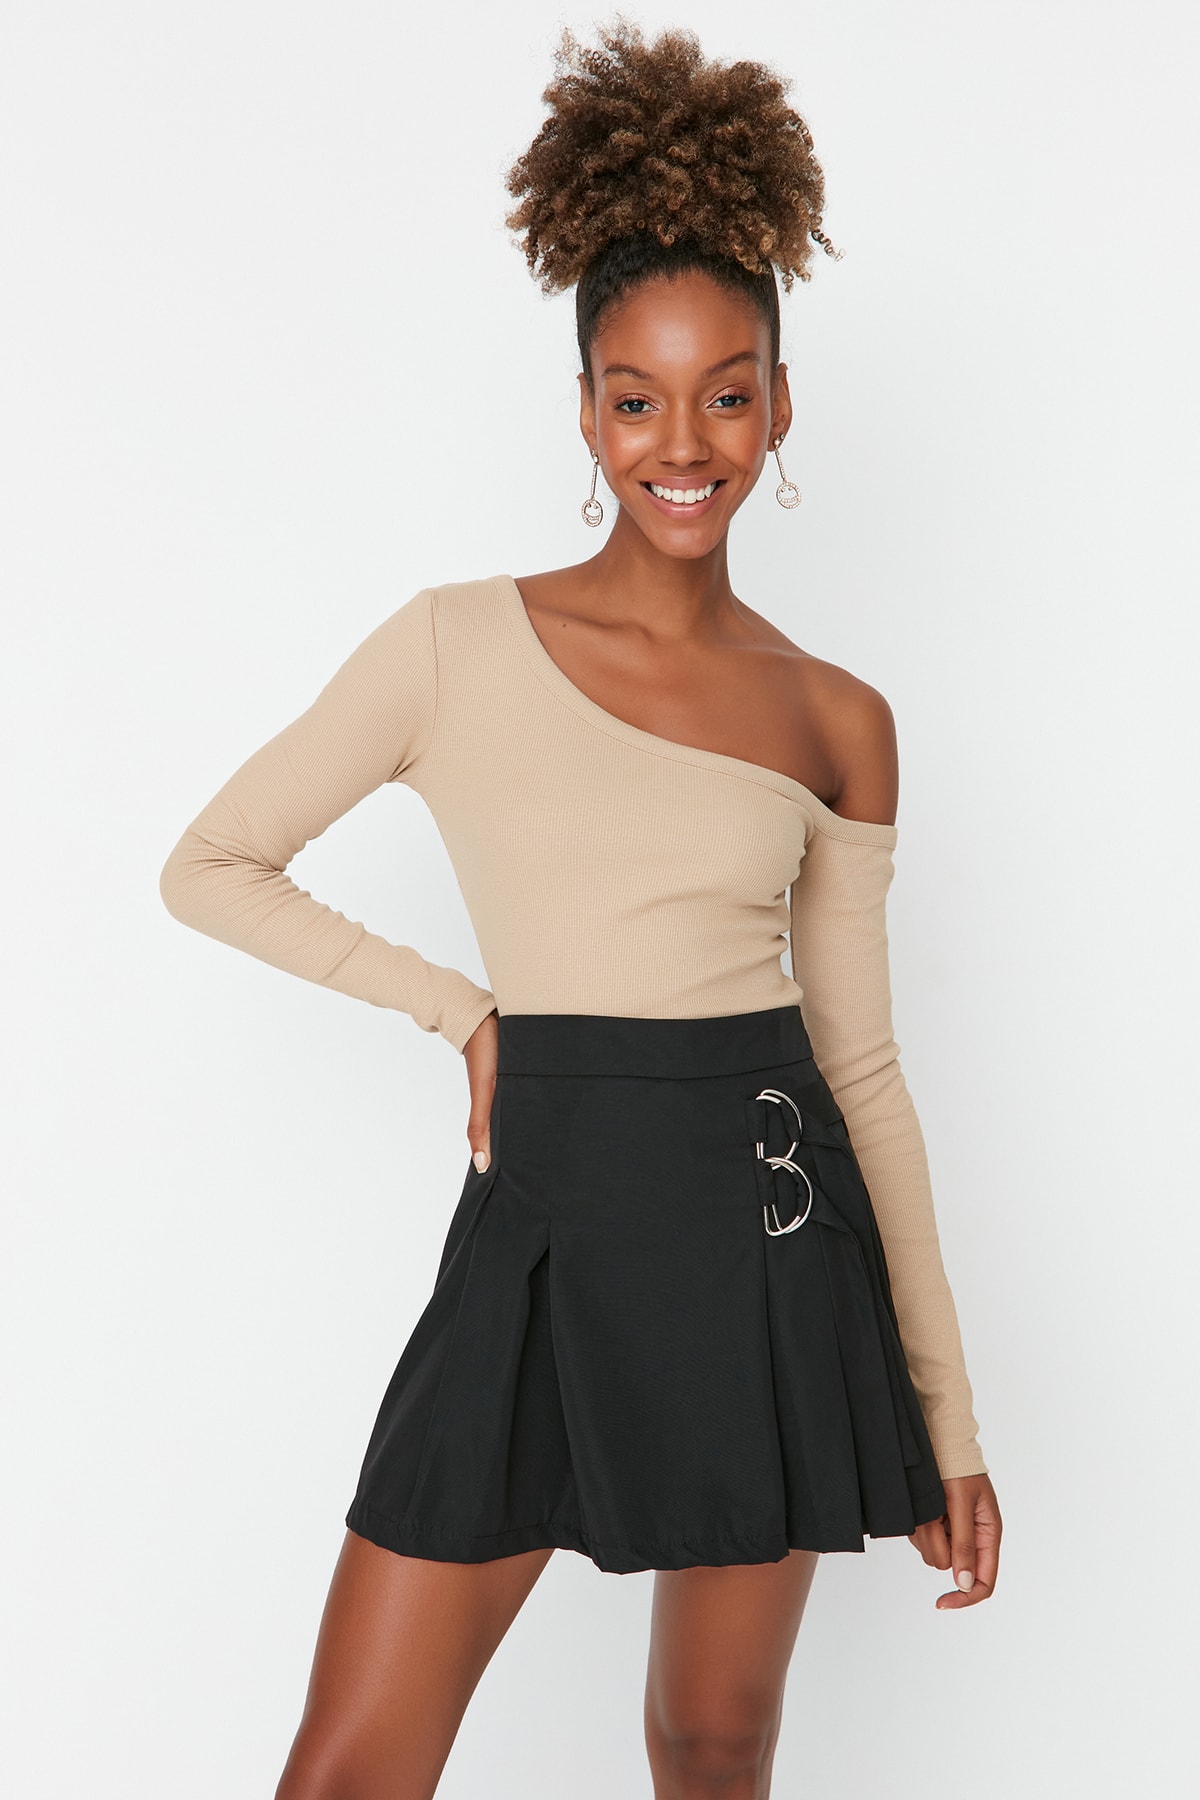 Trendyol Black Mini Woven Skirt